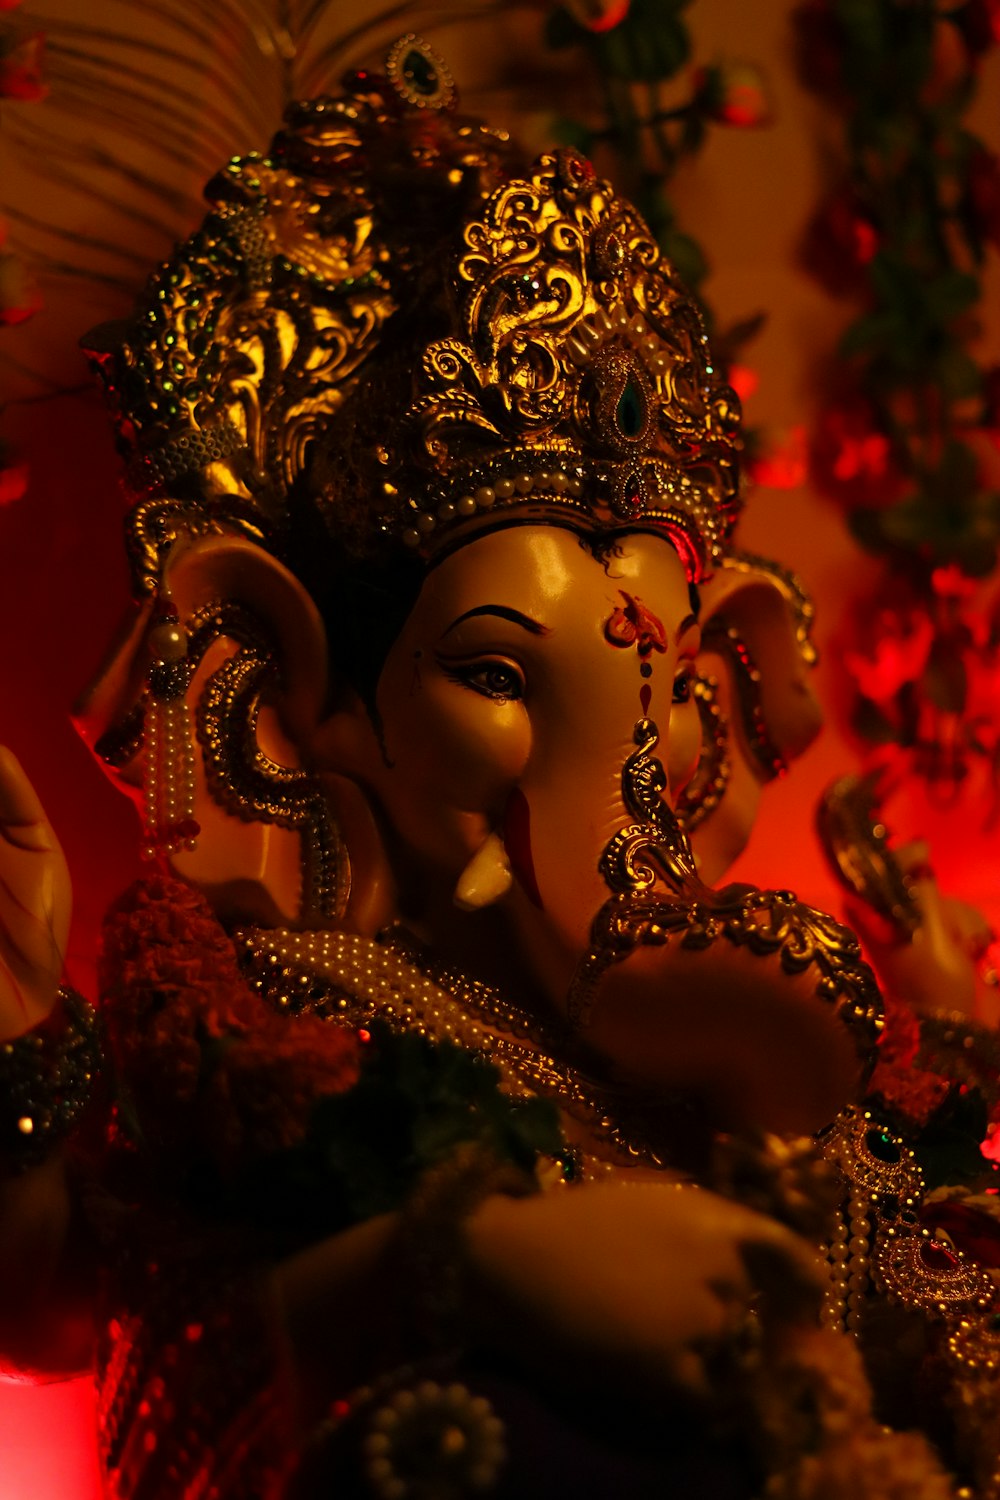 gold hindu deity figurine in red background